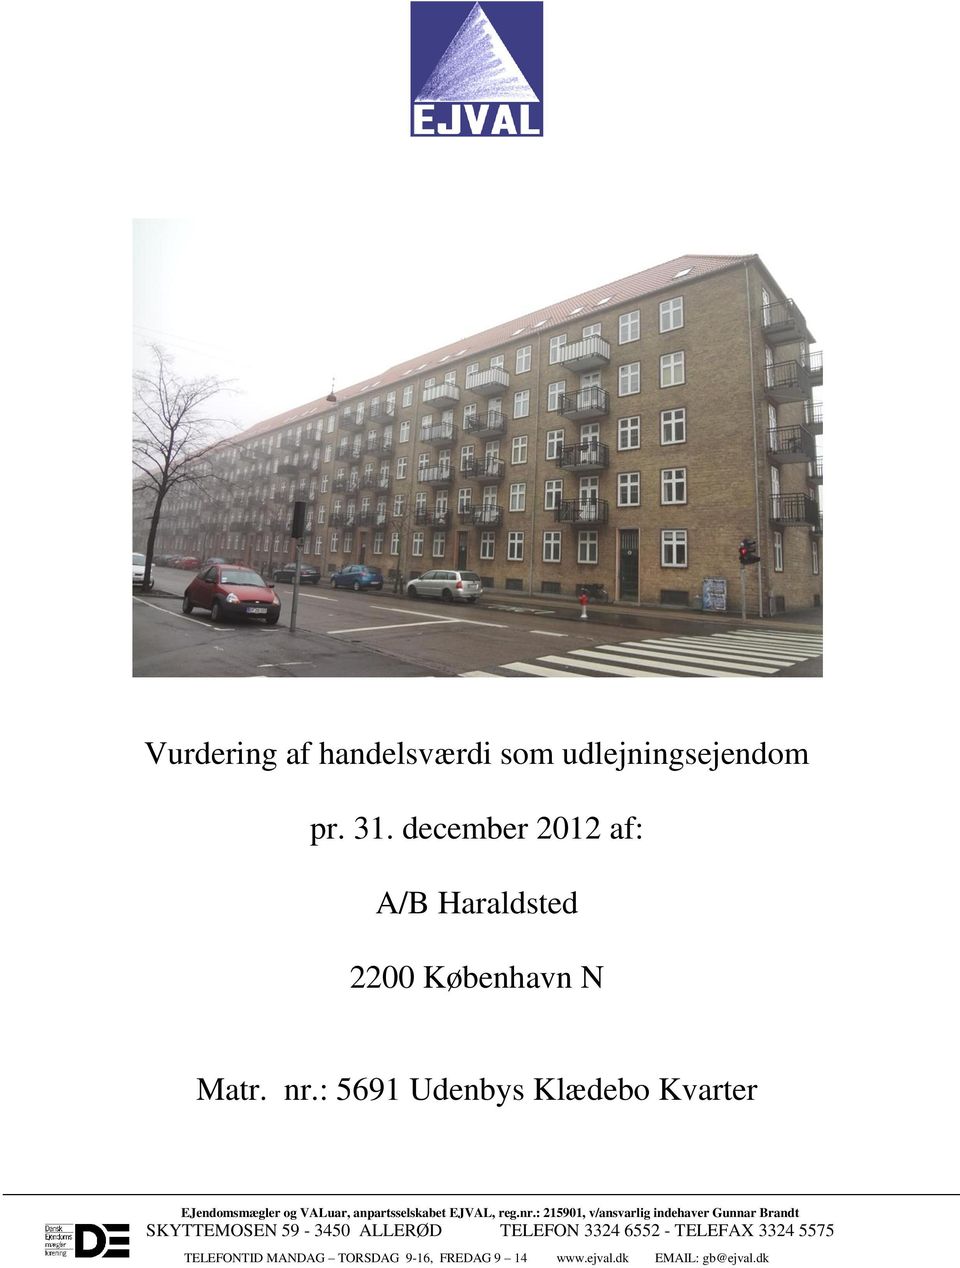 : 5691 Udenbys Klædebo Kvarter EJendomsmægler og VALuar, anpartsselskabet EJVAL, reg.nr.